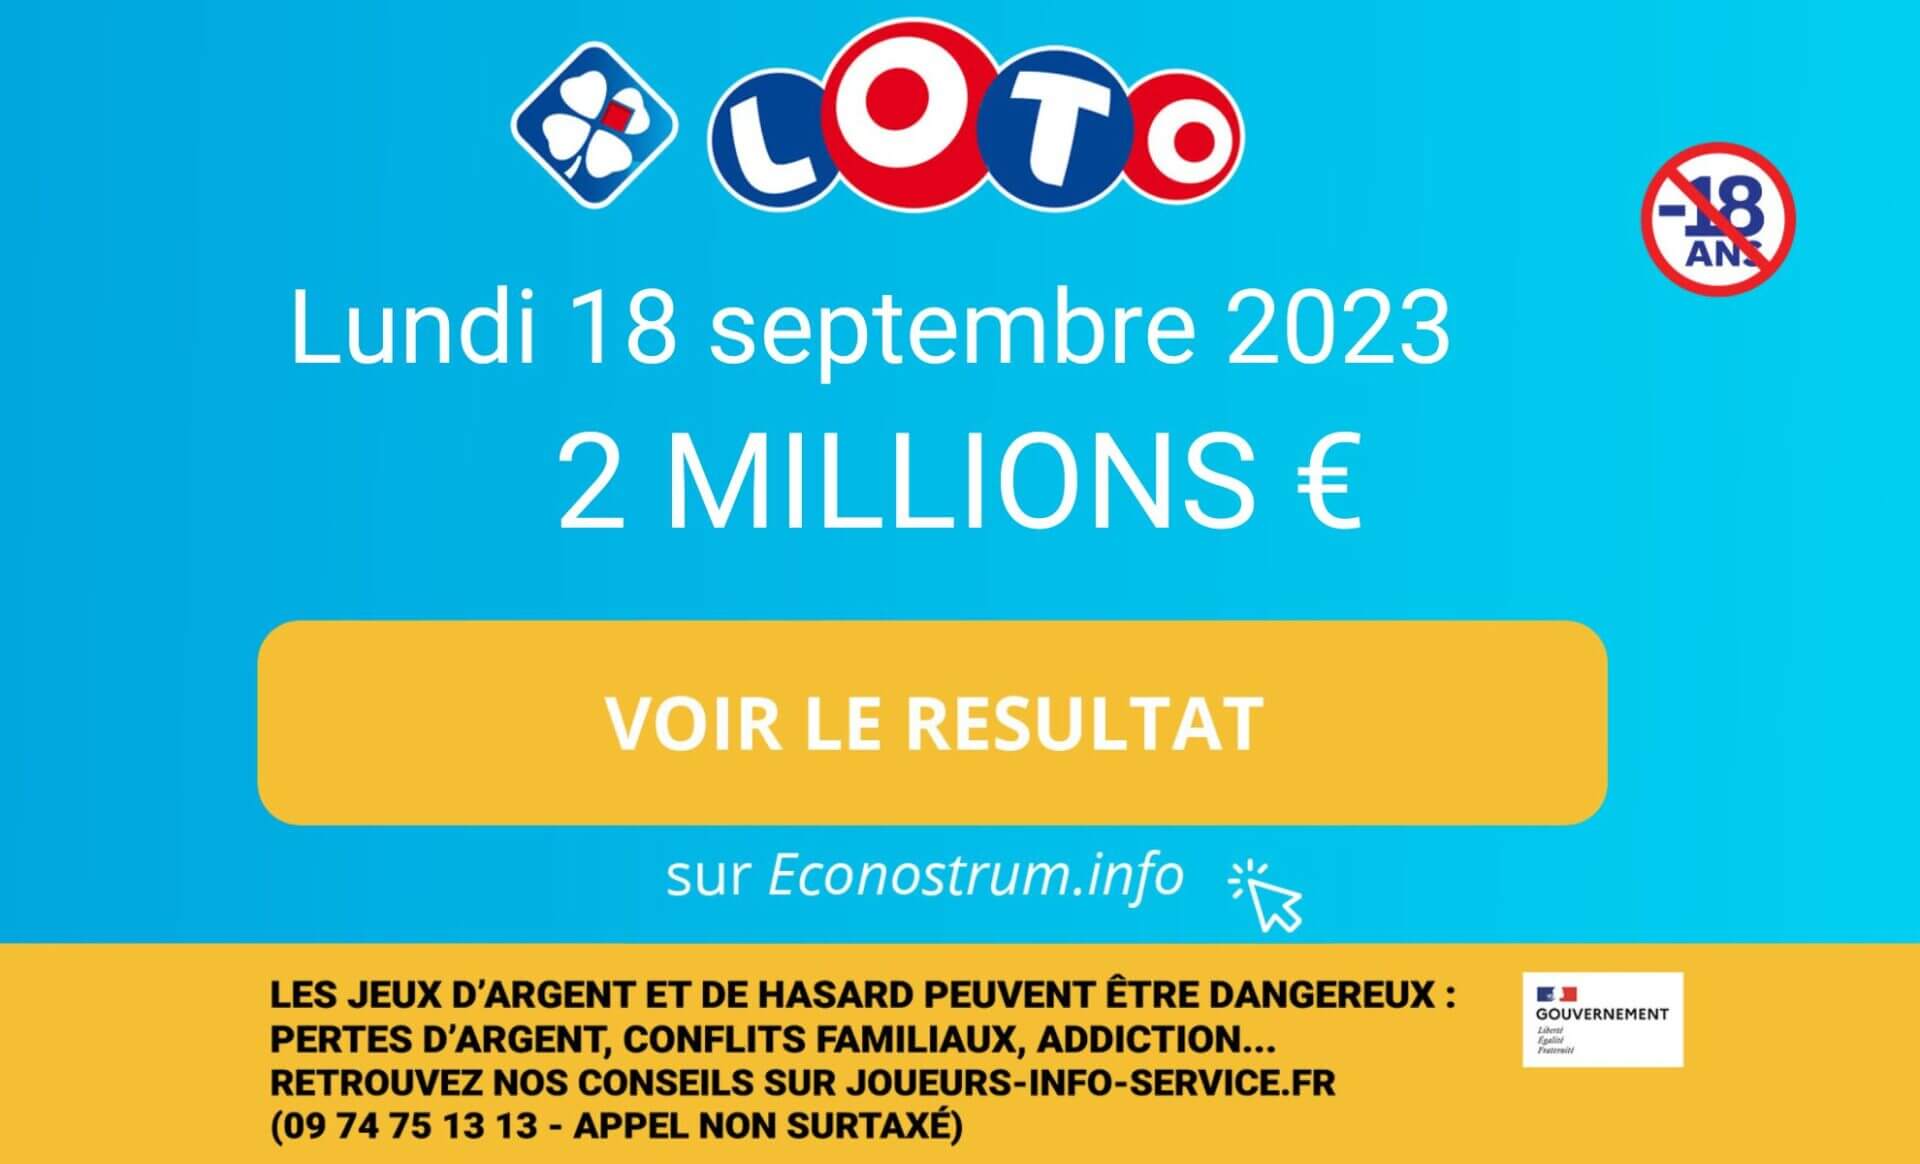 Résultats Du Loto Du 19 Septembre 2023 Les résultats du Loto de la FDJ du lundi 18 septembre